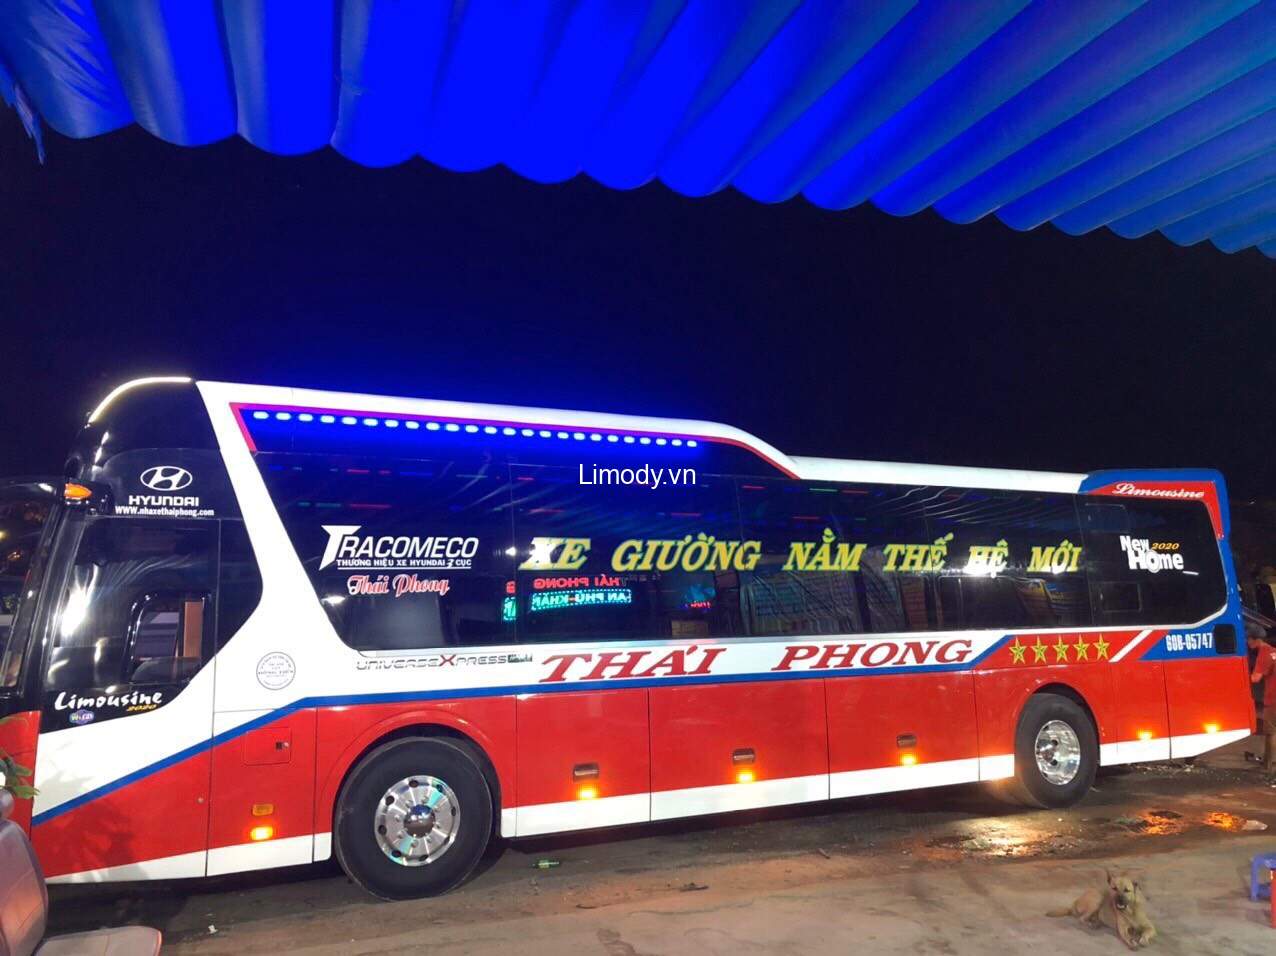 Top 5 Nhà xe Đồng Nai đi Kiên Giang: đặt limousine, xe khách giường nằm